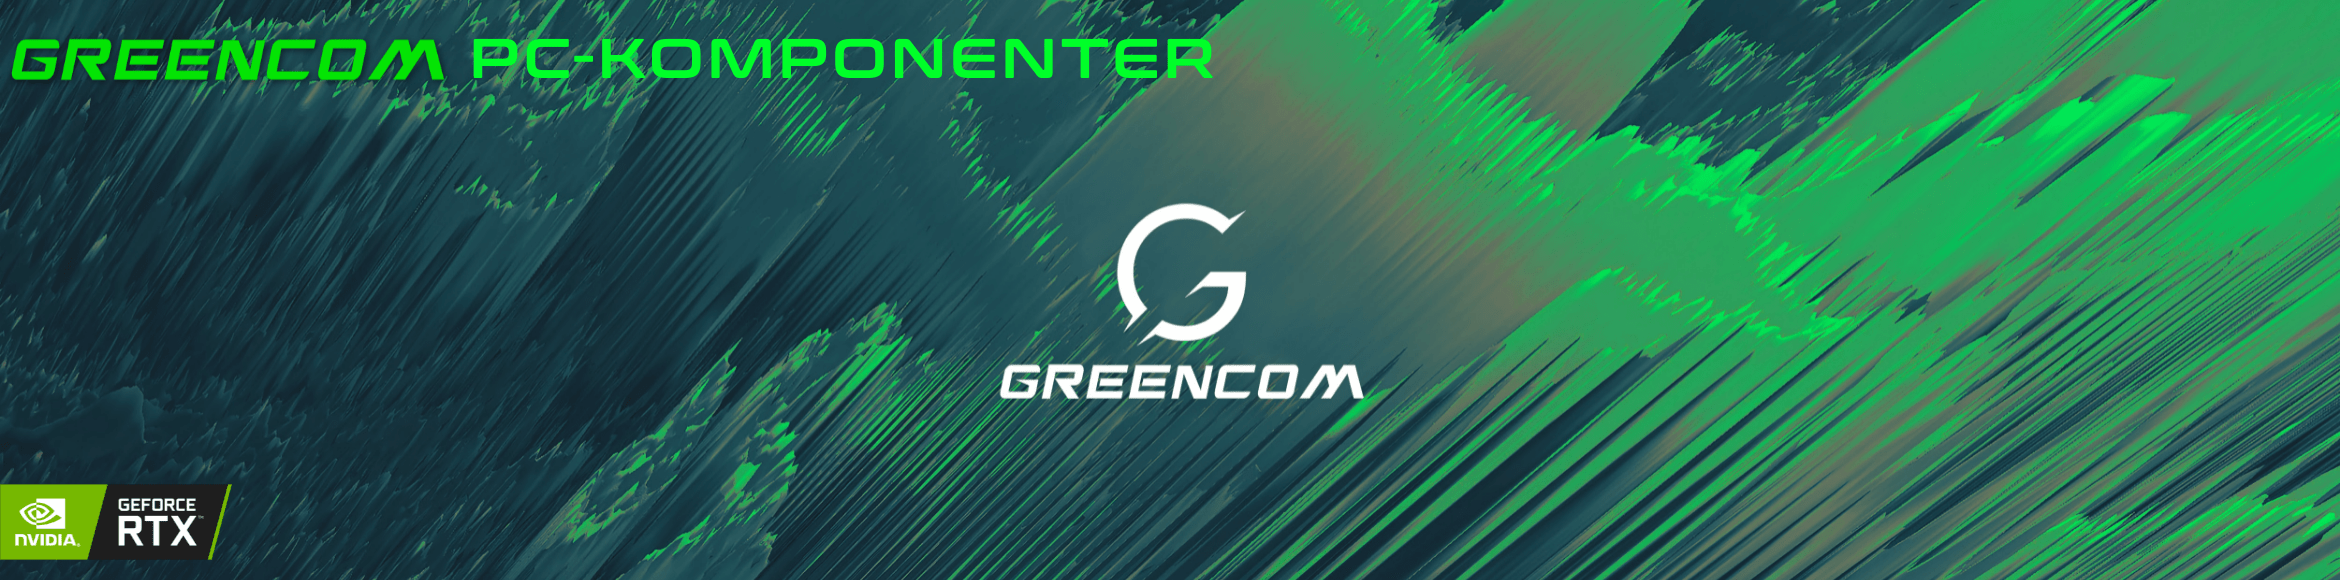 Greencom Coolers